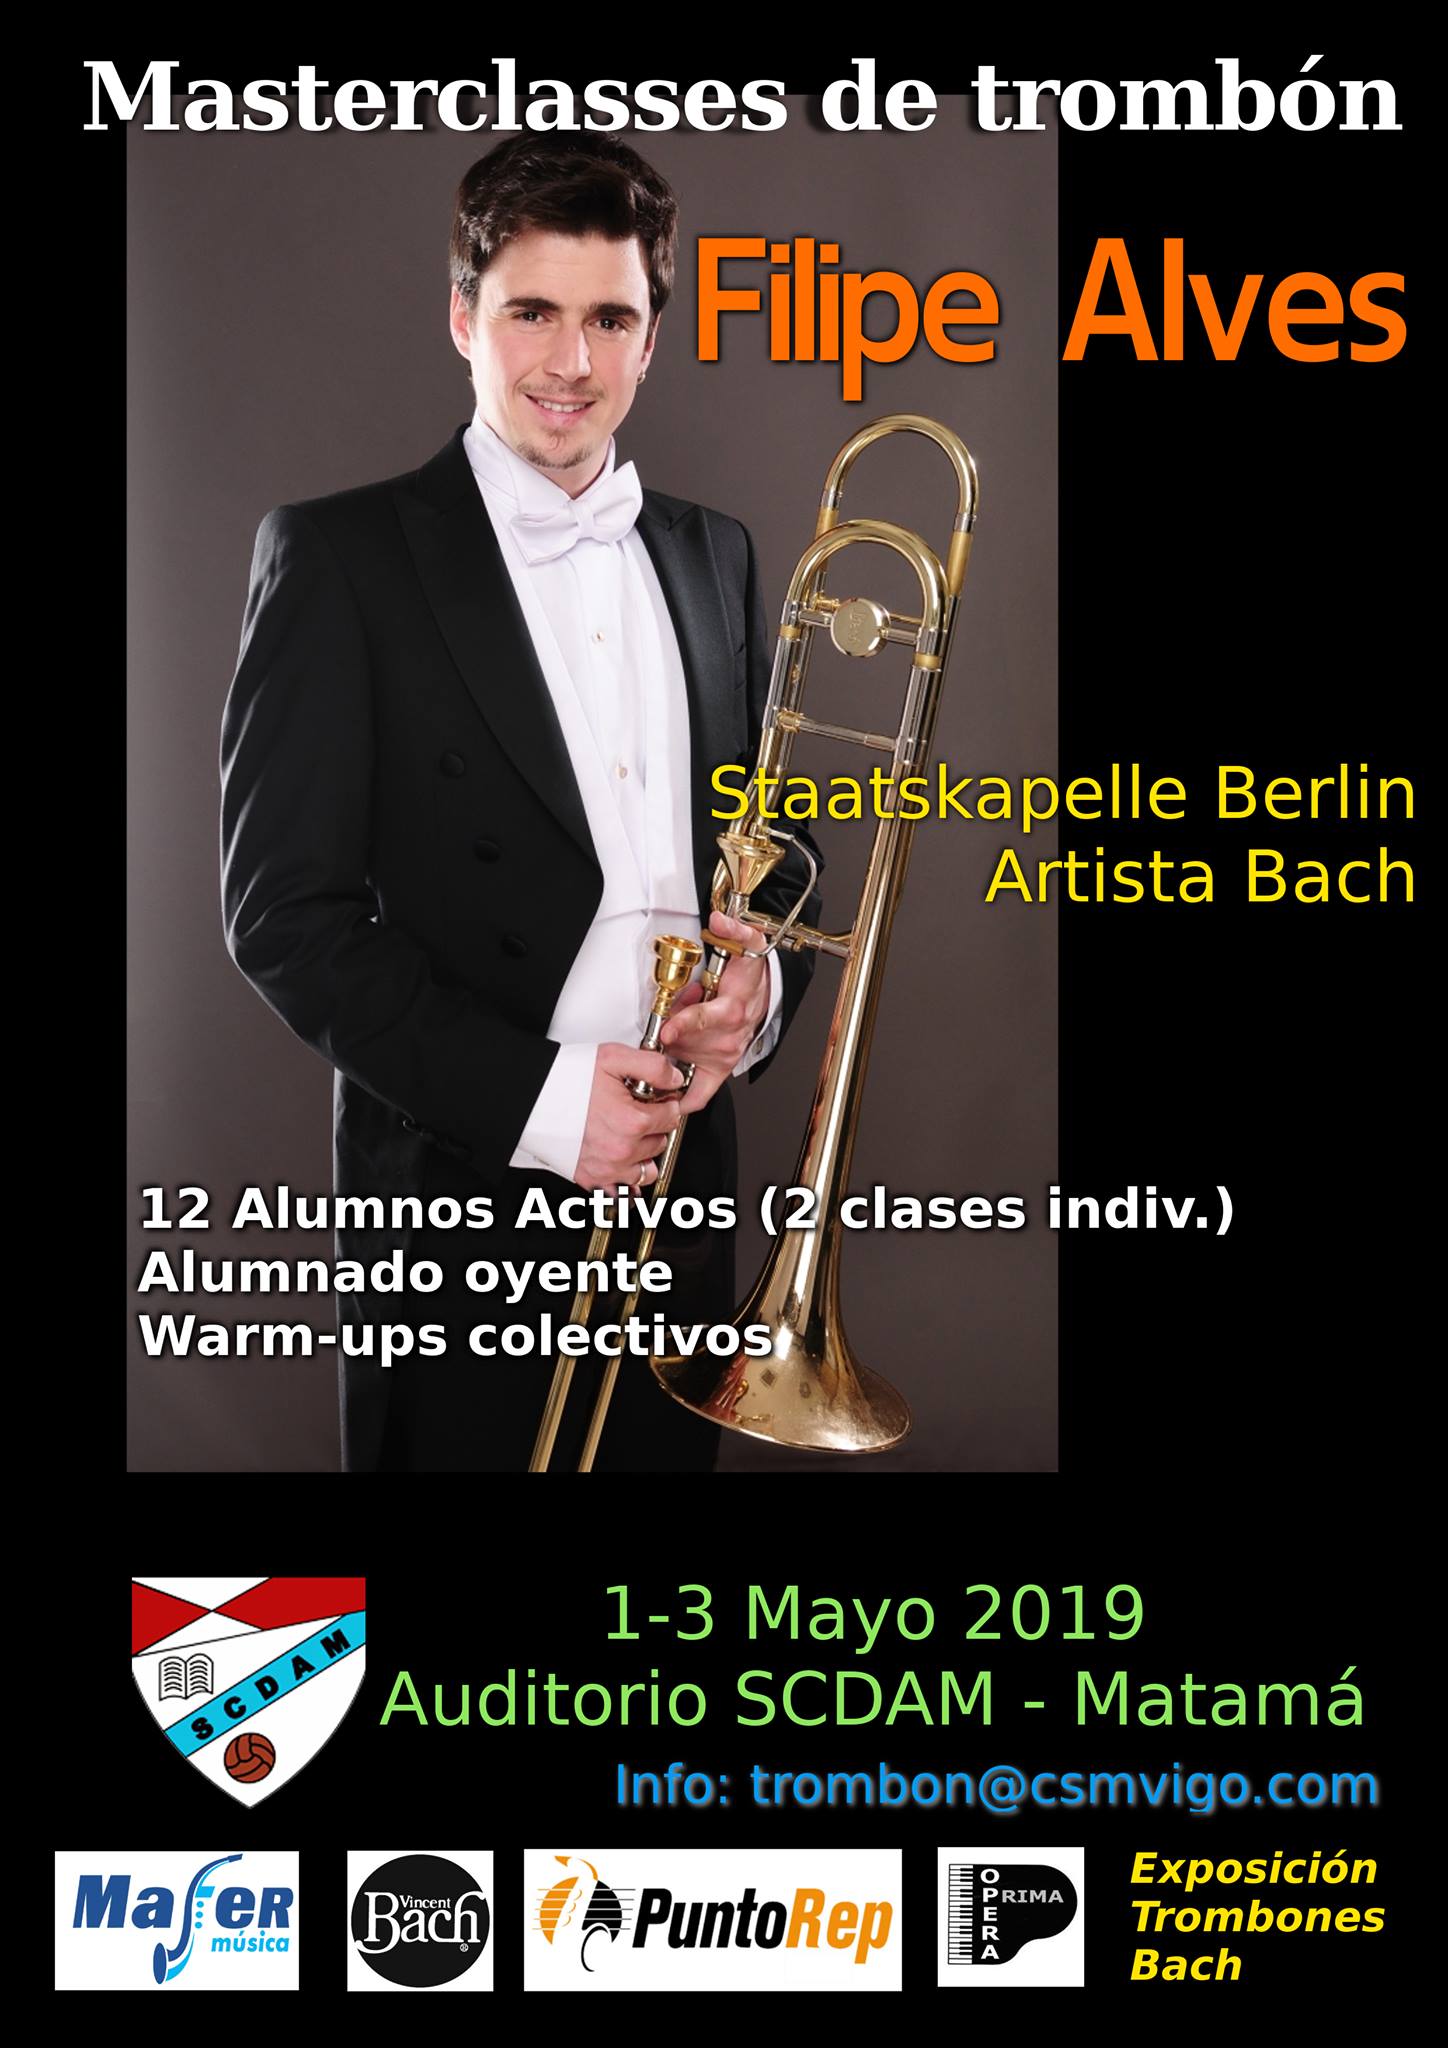 Masterclass de trombón con Filipe Alves